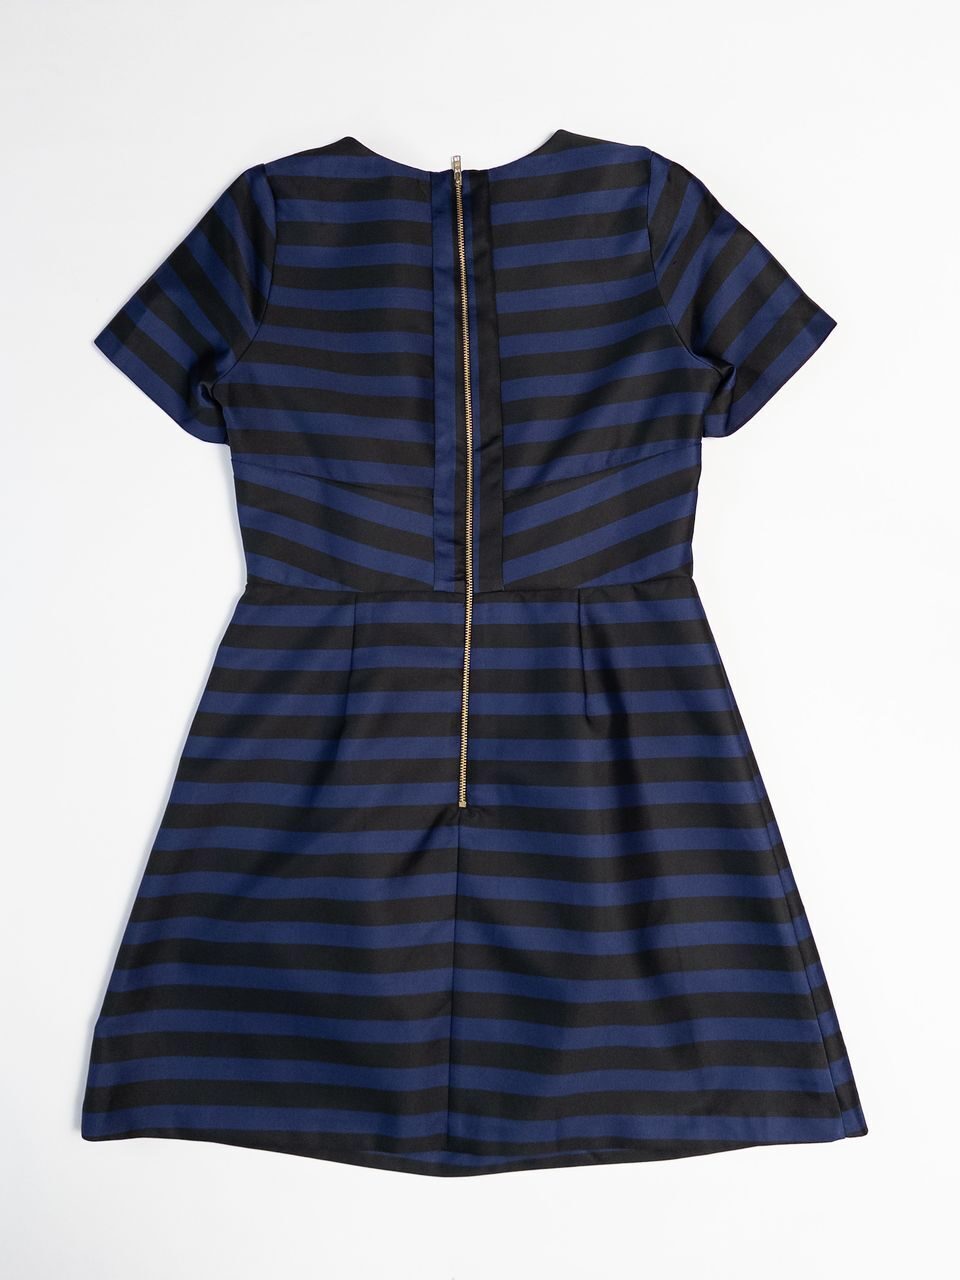 Платье из плотной ткани цвет синий /чёрный в полоску размер  UK 12 (rus 46) BY VERY